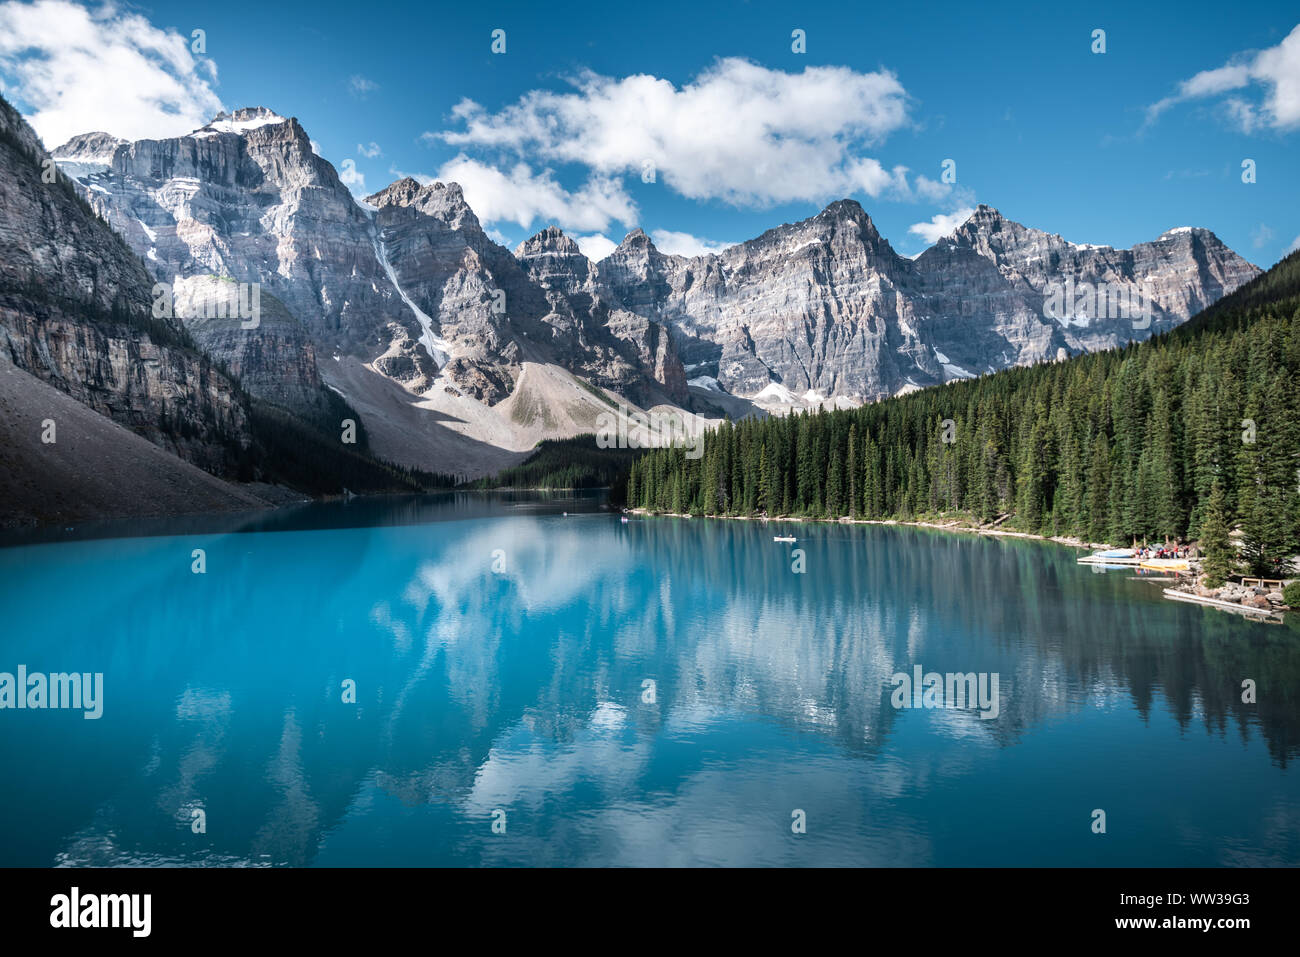 Beau lac Moraine, dans le parc national Banff, Alberta, Canada Banque D'Images